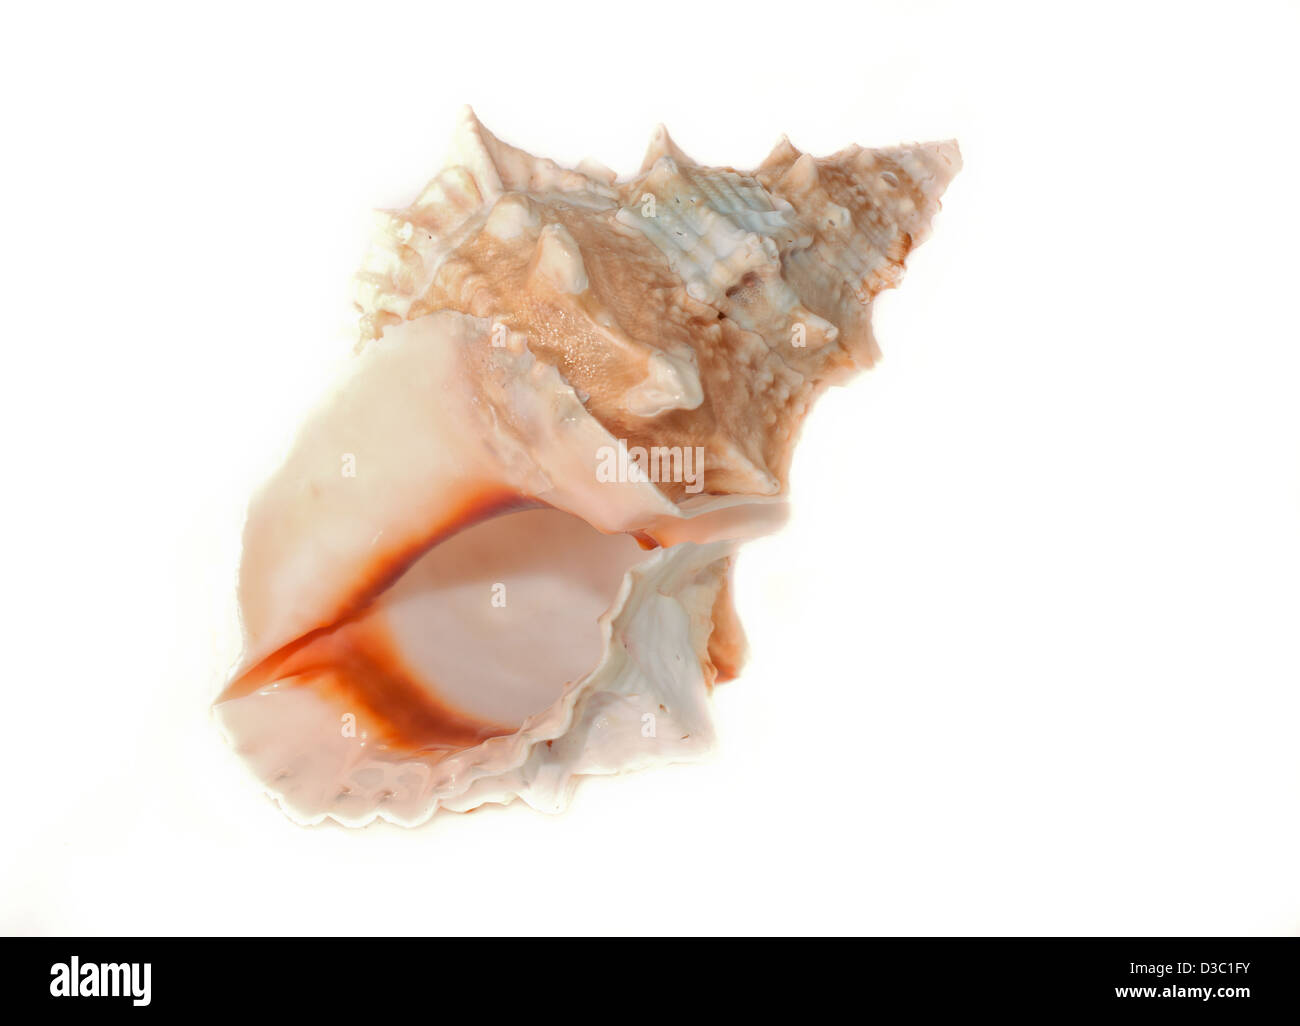 Oceanografia Immagini senza sfondo e Foto Stock ritagliate - Alamy